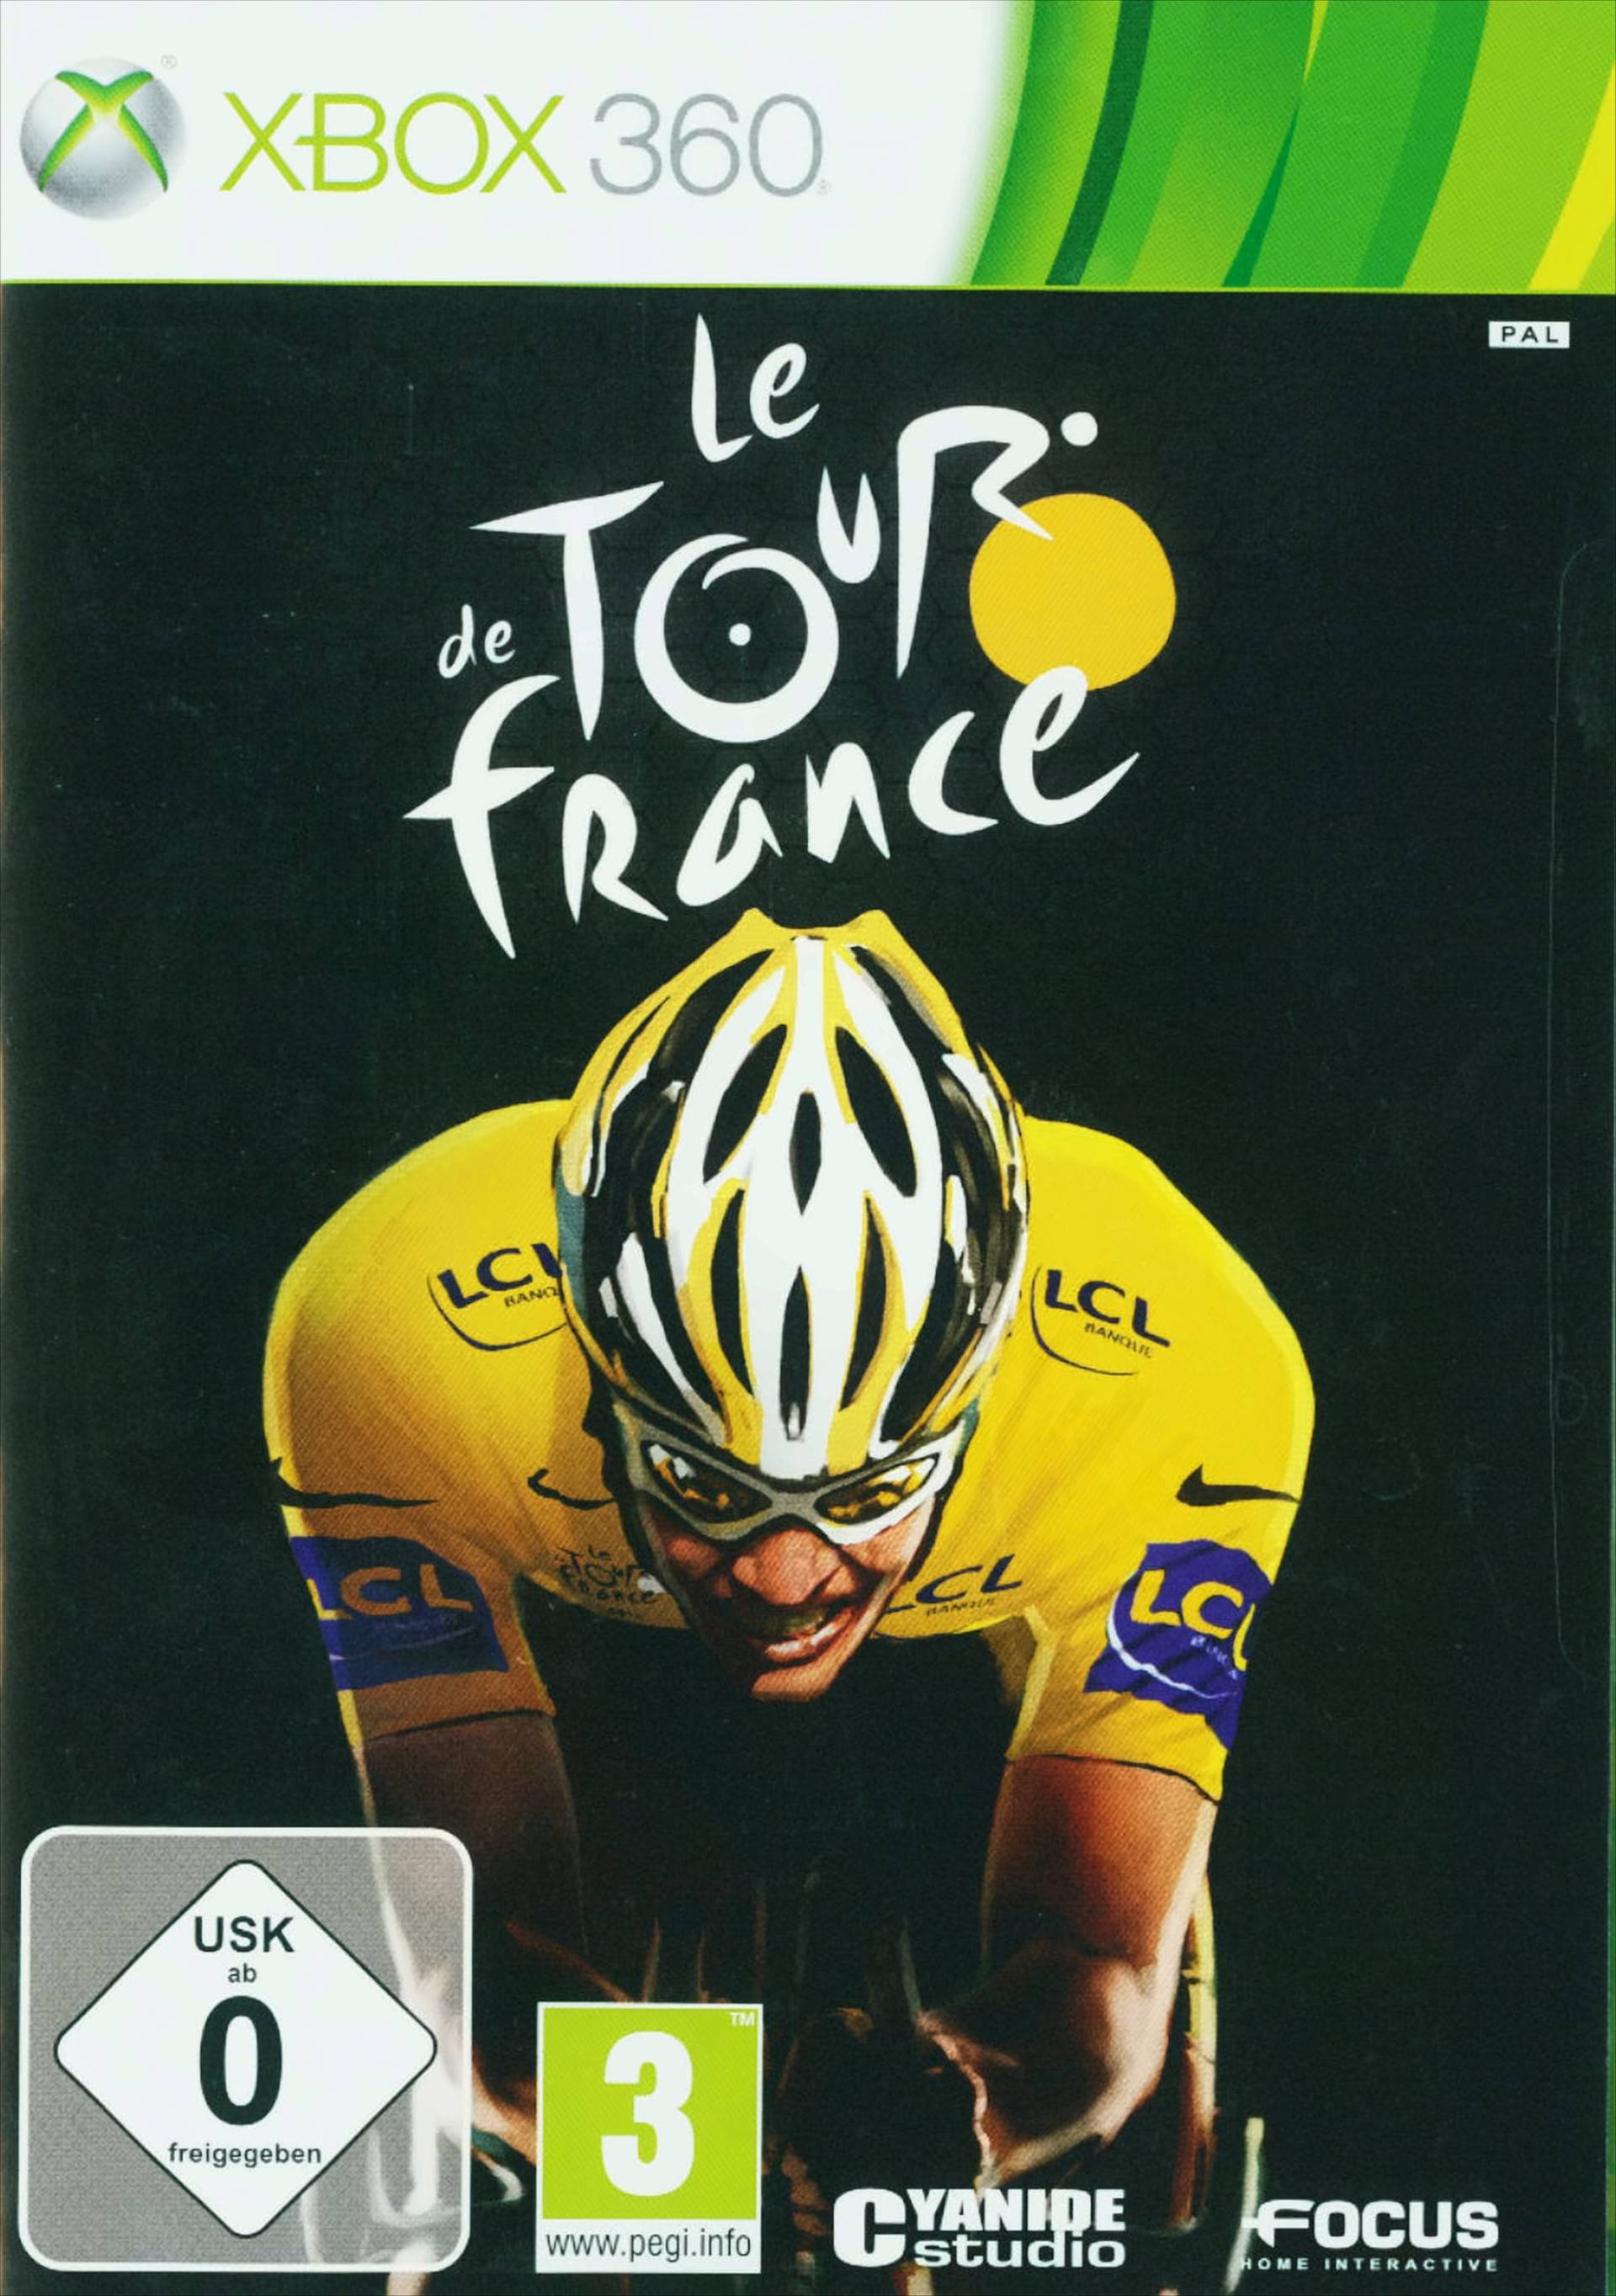 Le Tour de France von dtp